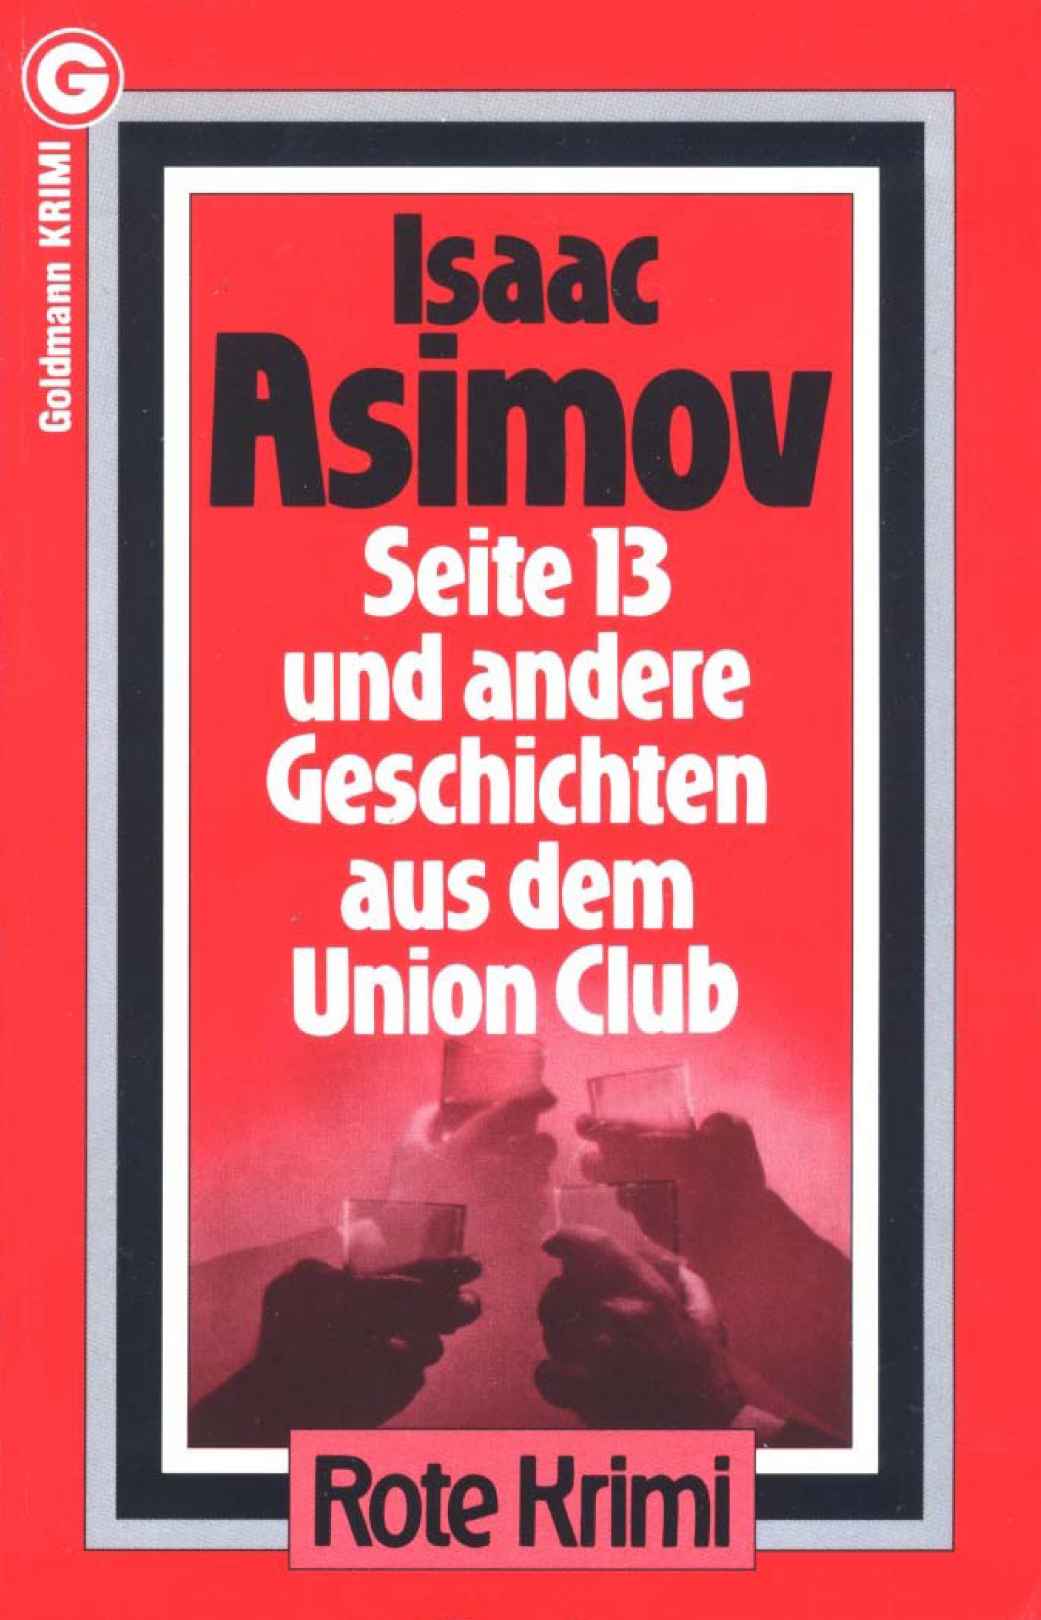 Asimov Isaac - Seite 13 und andere Geschichten aus dem Union Club.  скачать бесплатно